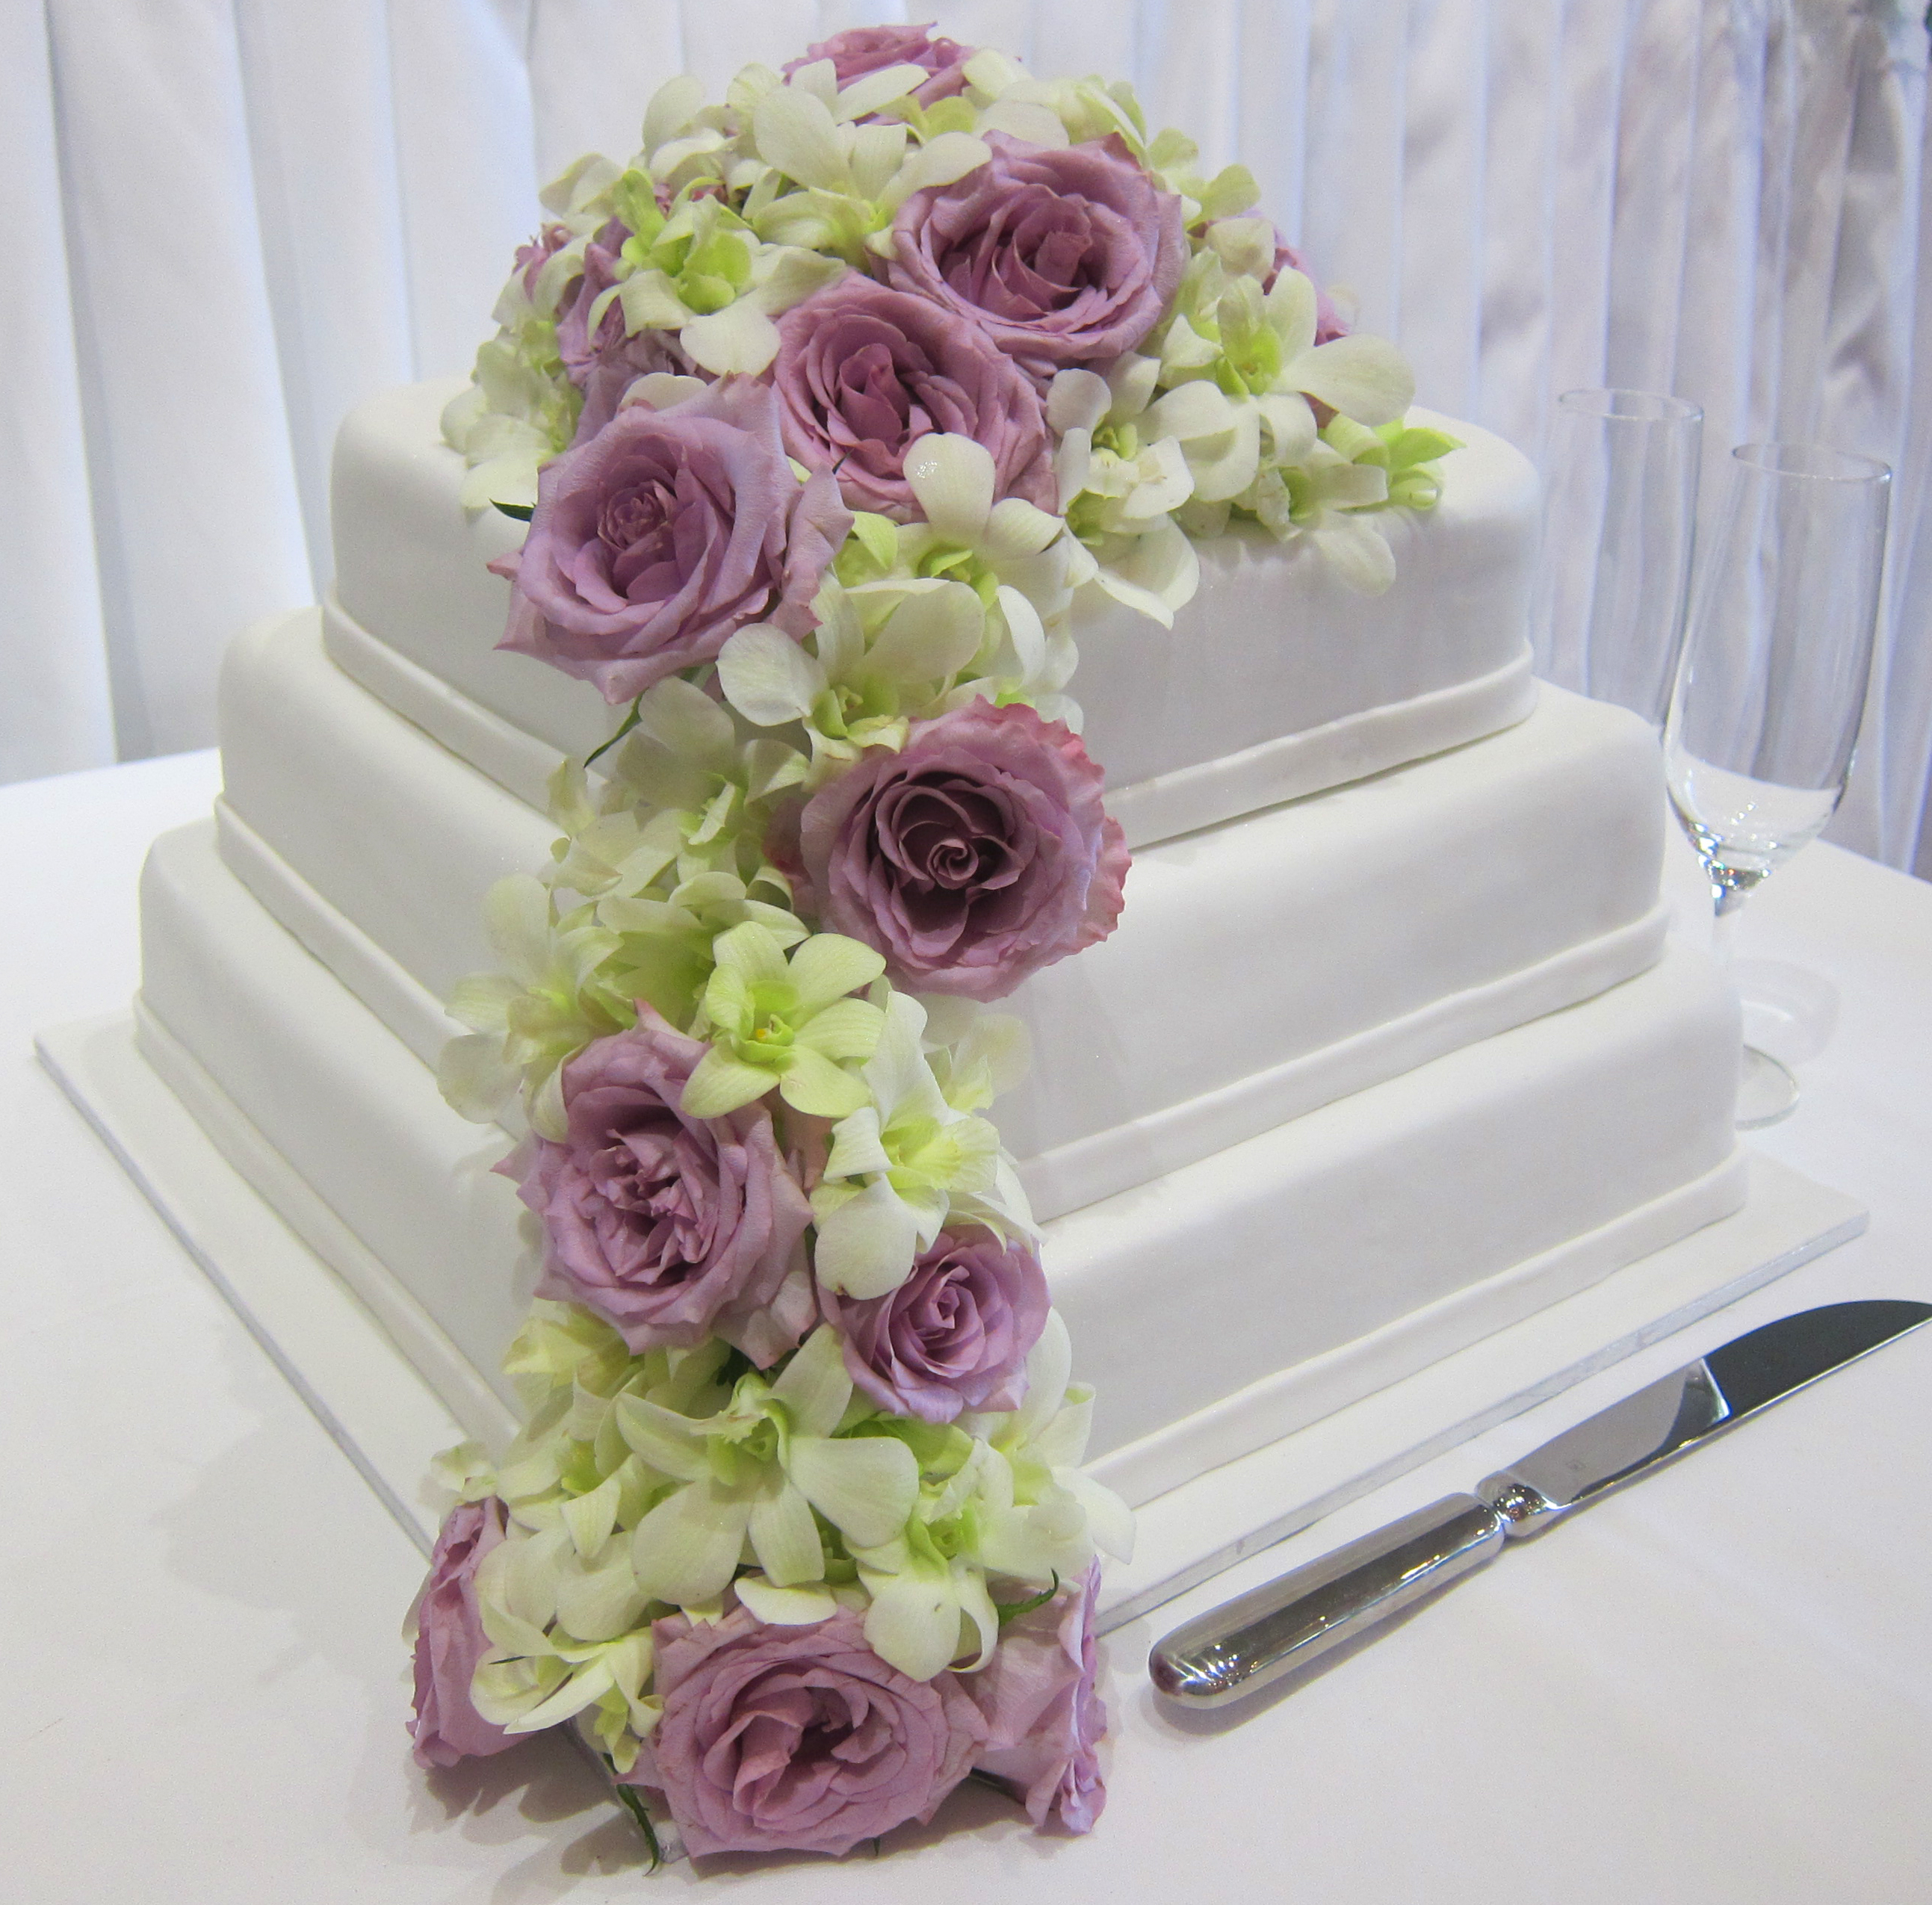 Wedding Flowers Ideas: Elegant Navy Blue Fresh Wedding Flowers ...